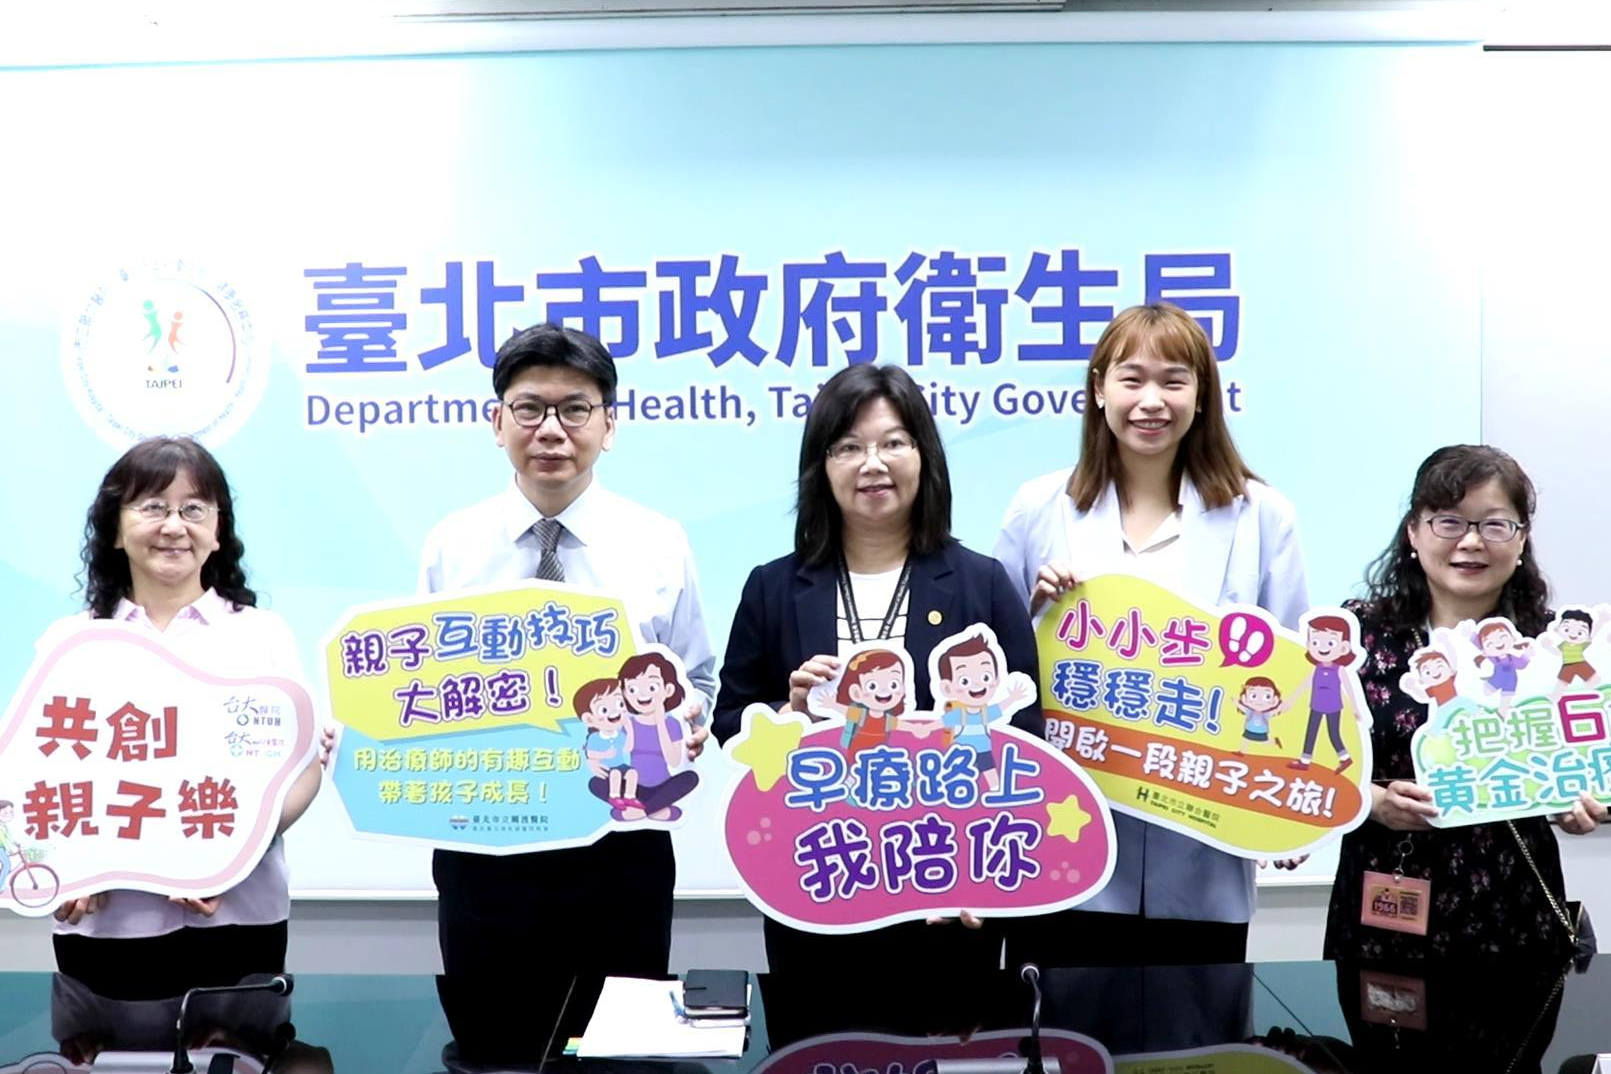  臺北市委託6家早期療育特約醫院辦理｢早期療育親子工作坊活動」